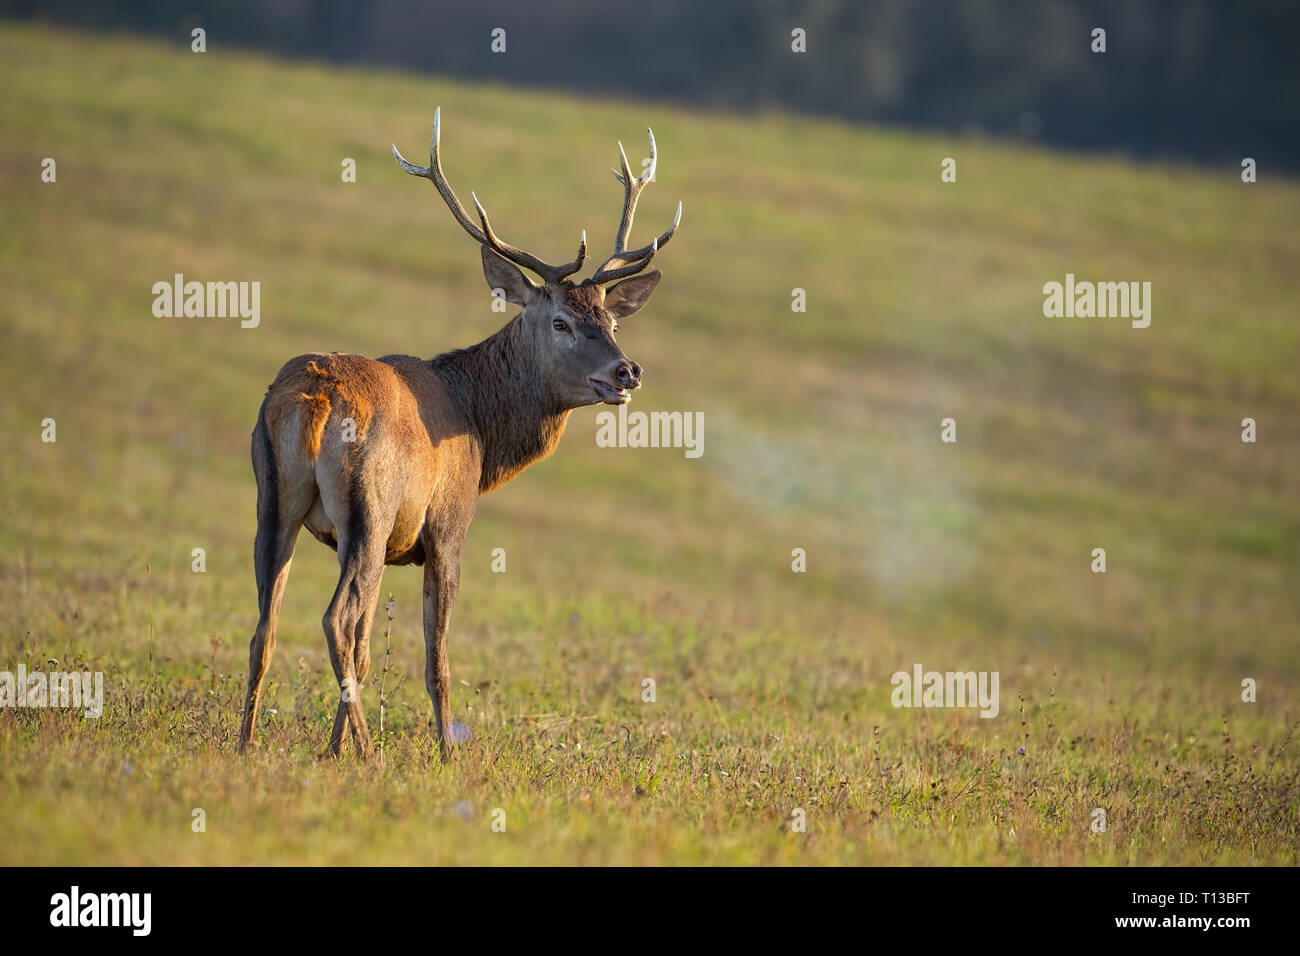 Red deer, cervus elaphus, stag in rut breathing steam. Stock Photo